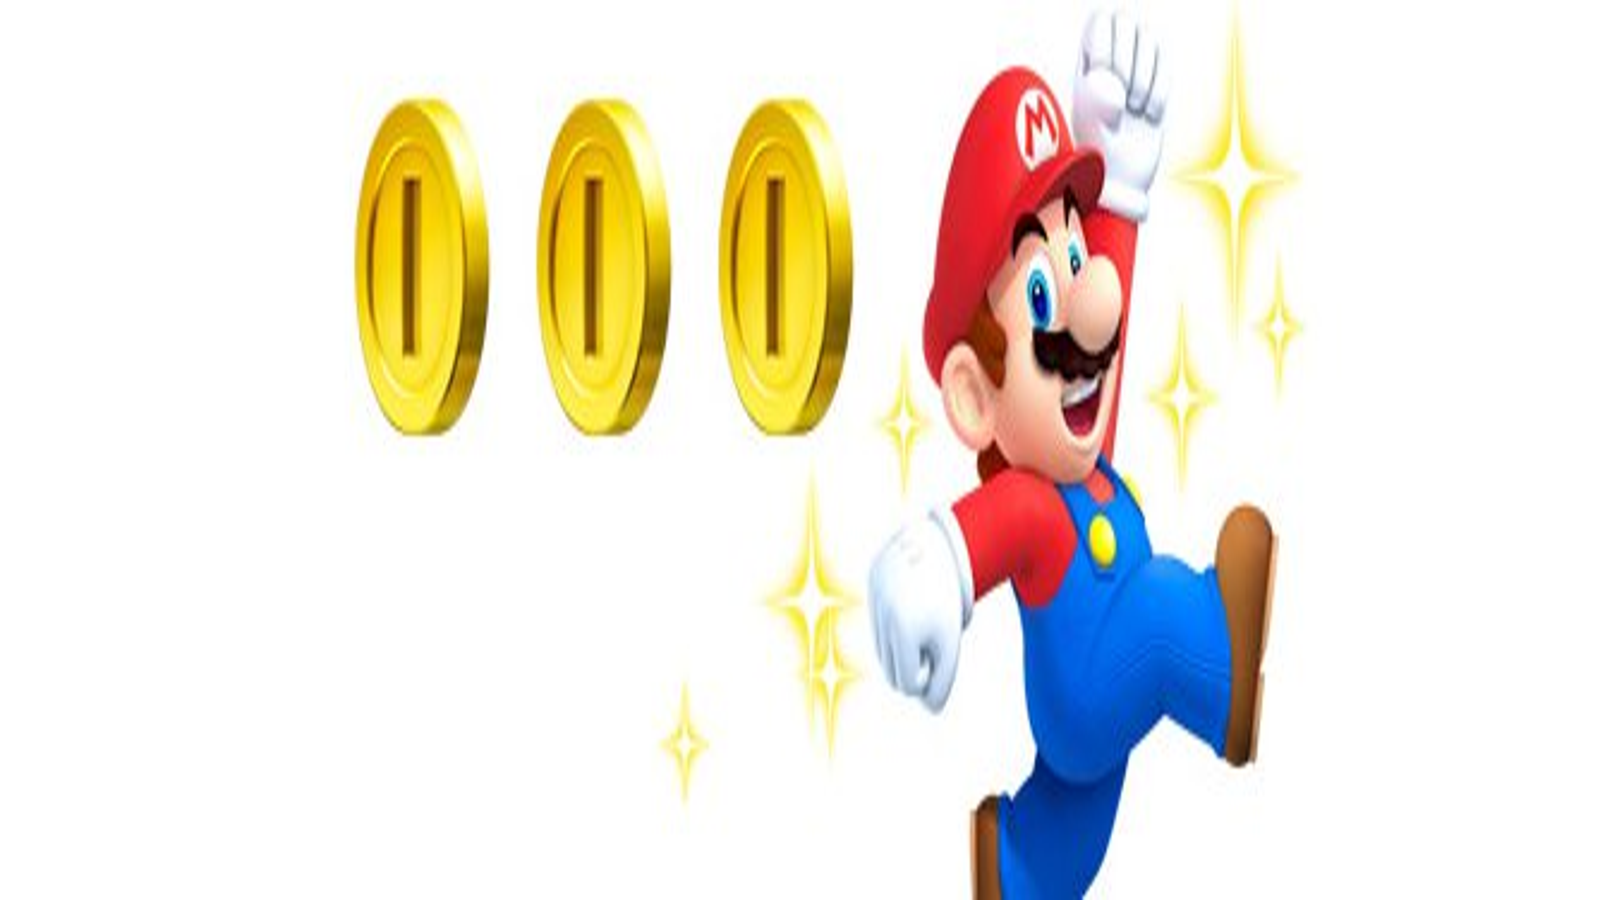 New Super Mario Bros. 2 gets its eShop price - Pure Nintendo